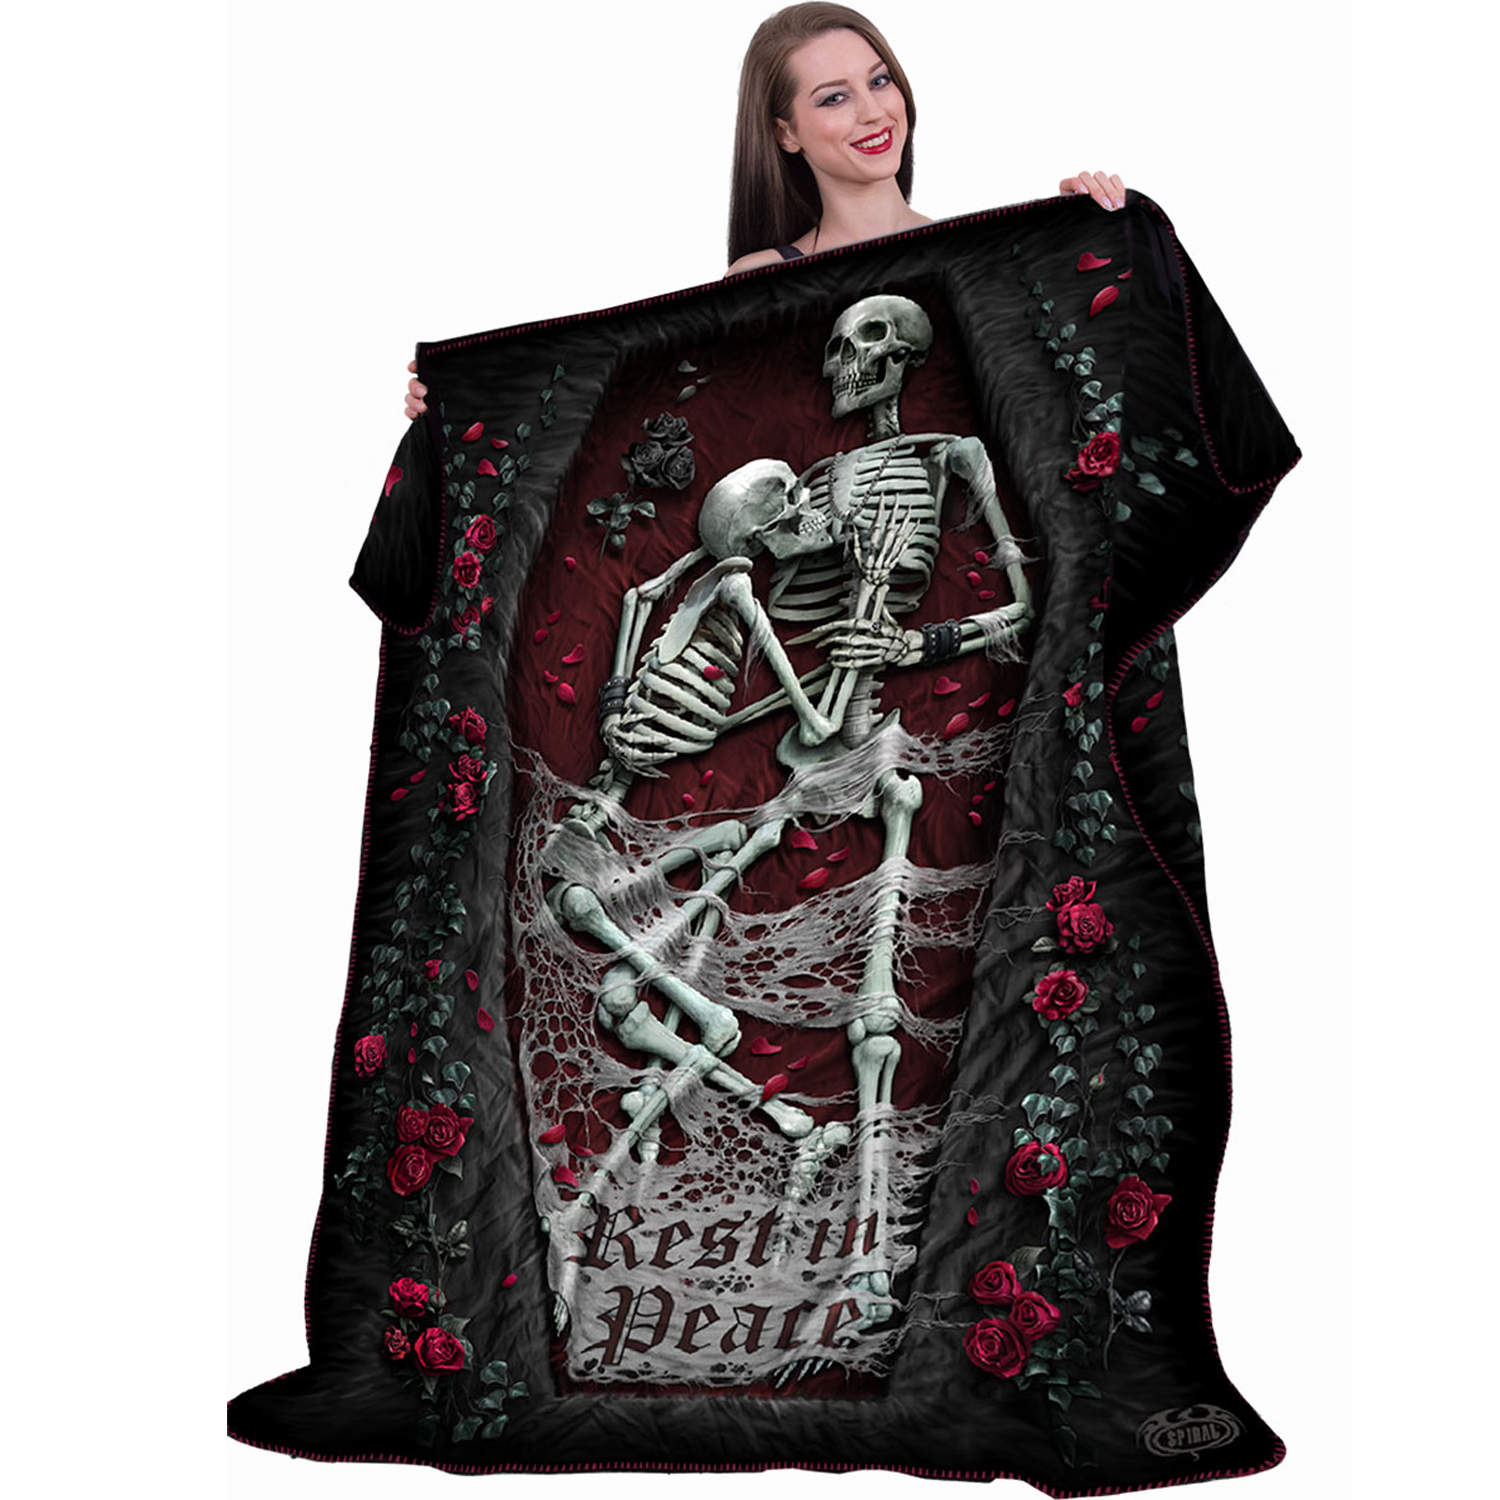 Dead Island Riptide Fleece Blanket